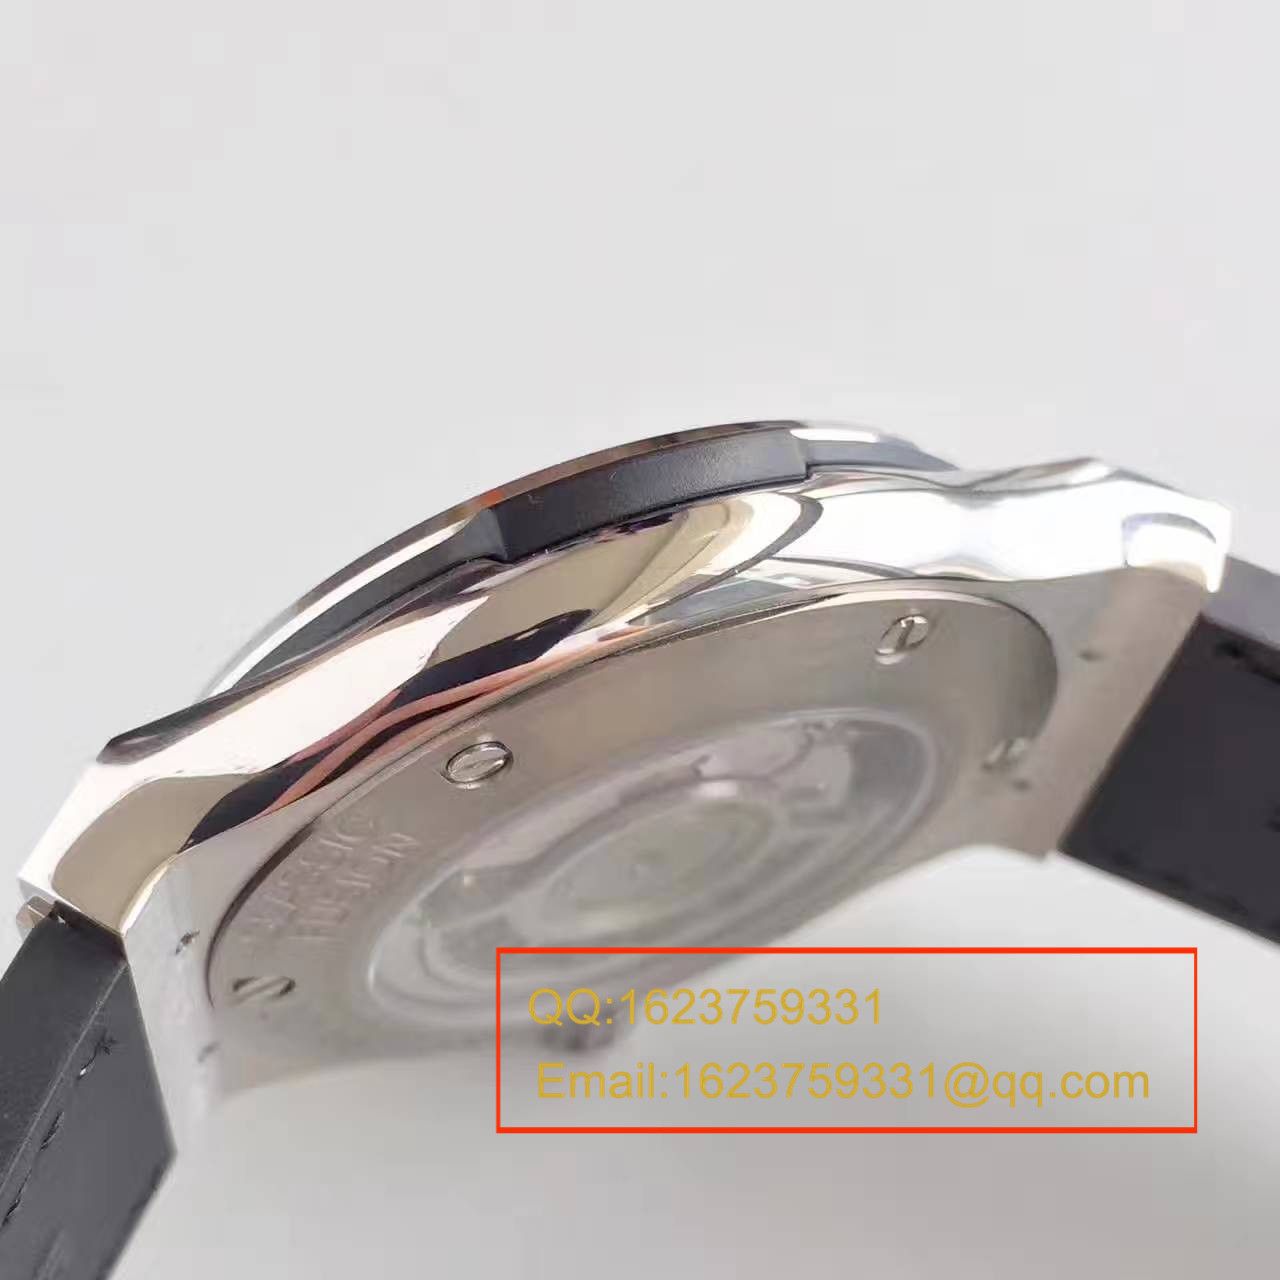 【JJ厂一比一超A高仿手表】宇舶经典融合系列511.NX.7170.LR腕表 